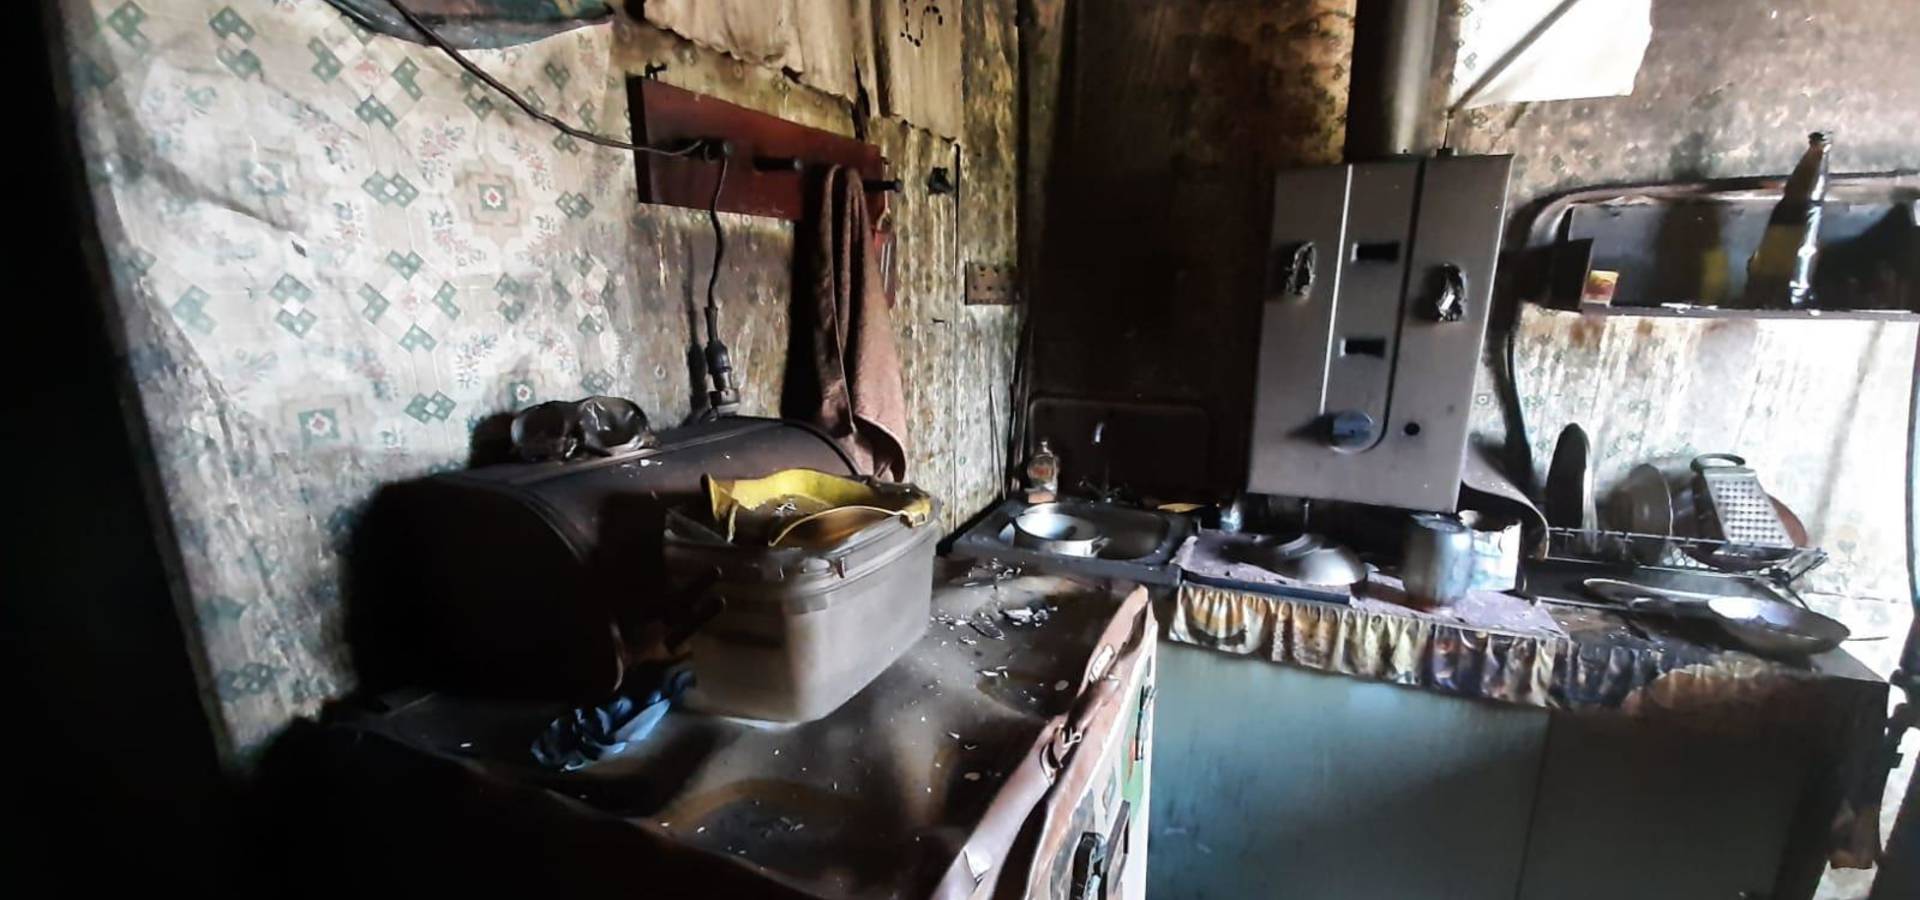 Підпалив квартиру у Хмільнику та погрожував вбивством: поліція затримала ревнивця